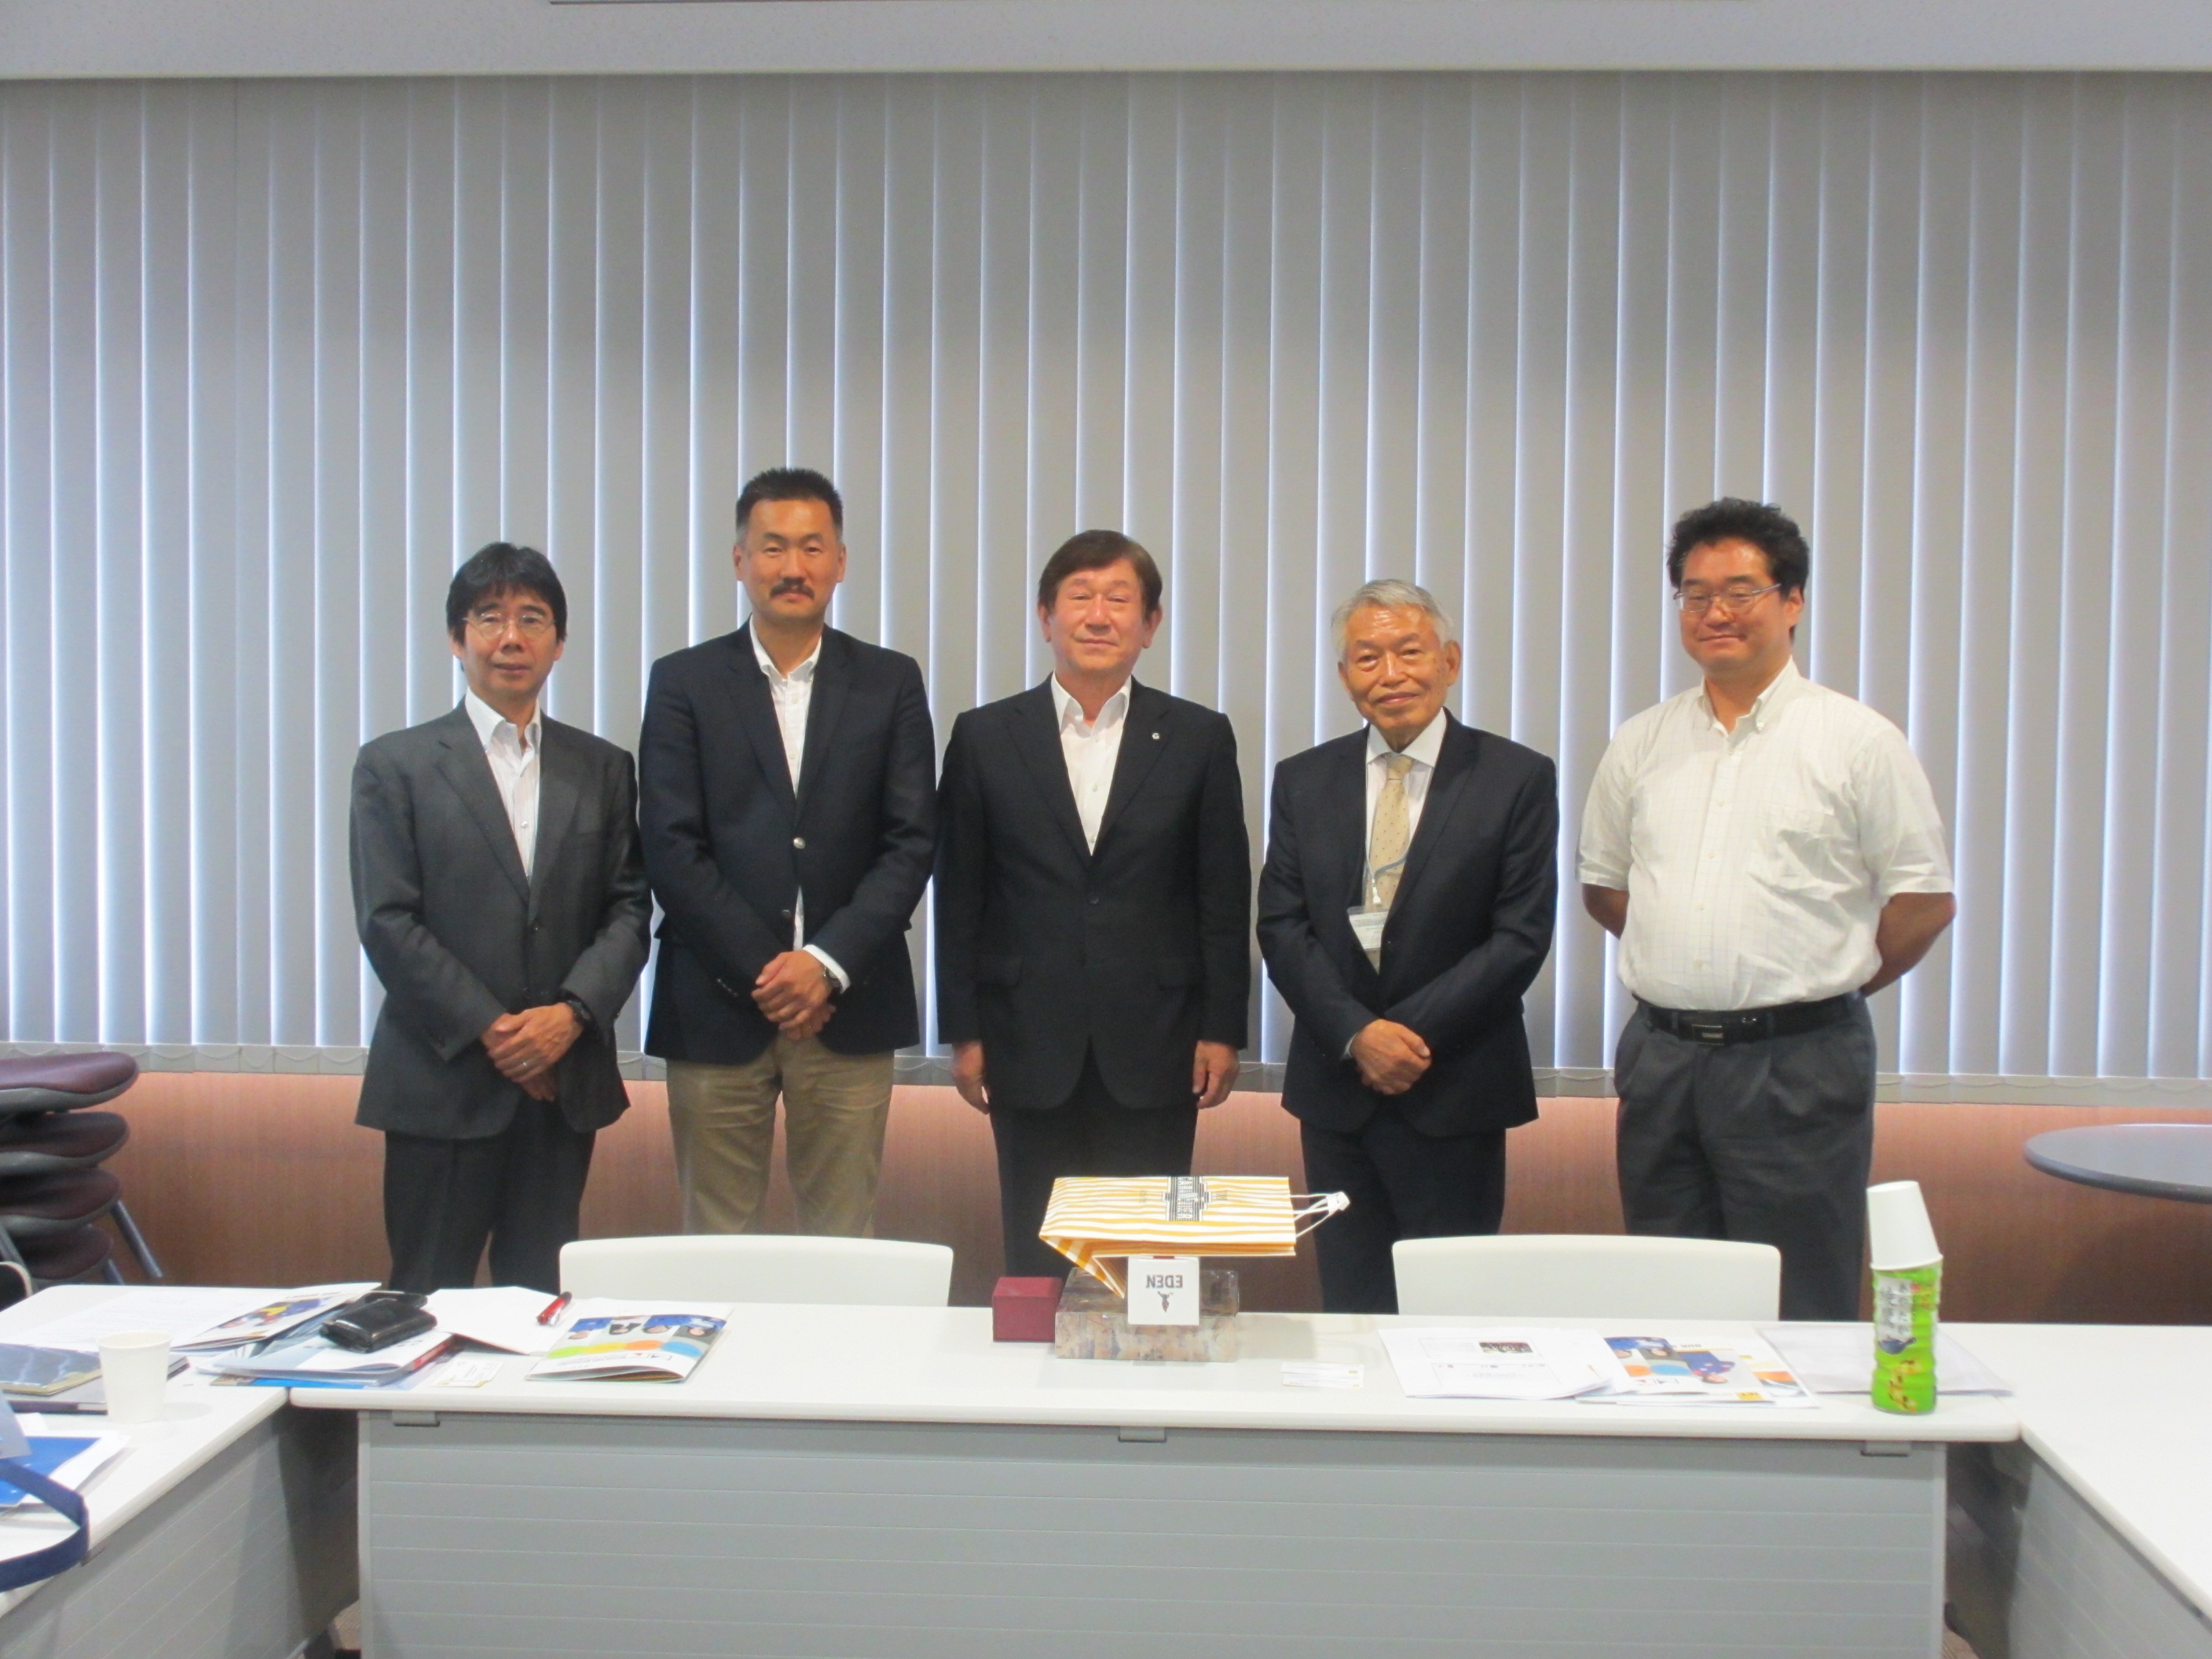 Dr. Sergelen (Center left), Dr. Nishimura (Center), and Dr. Akihiko (Center right)